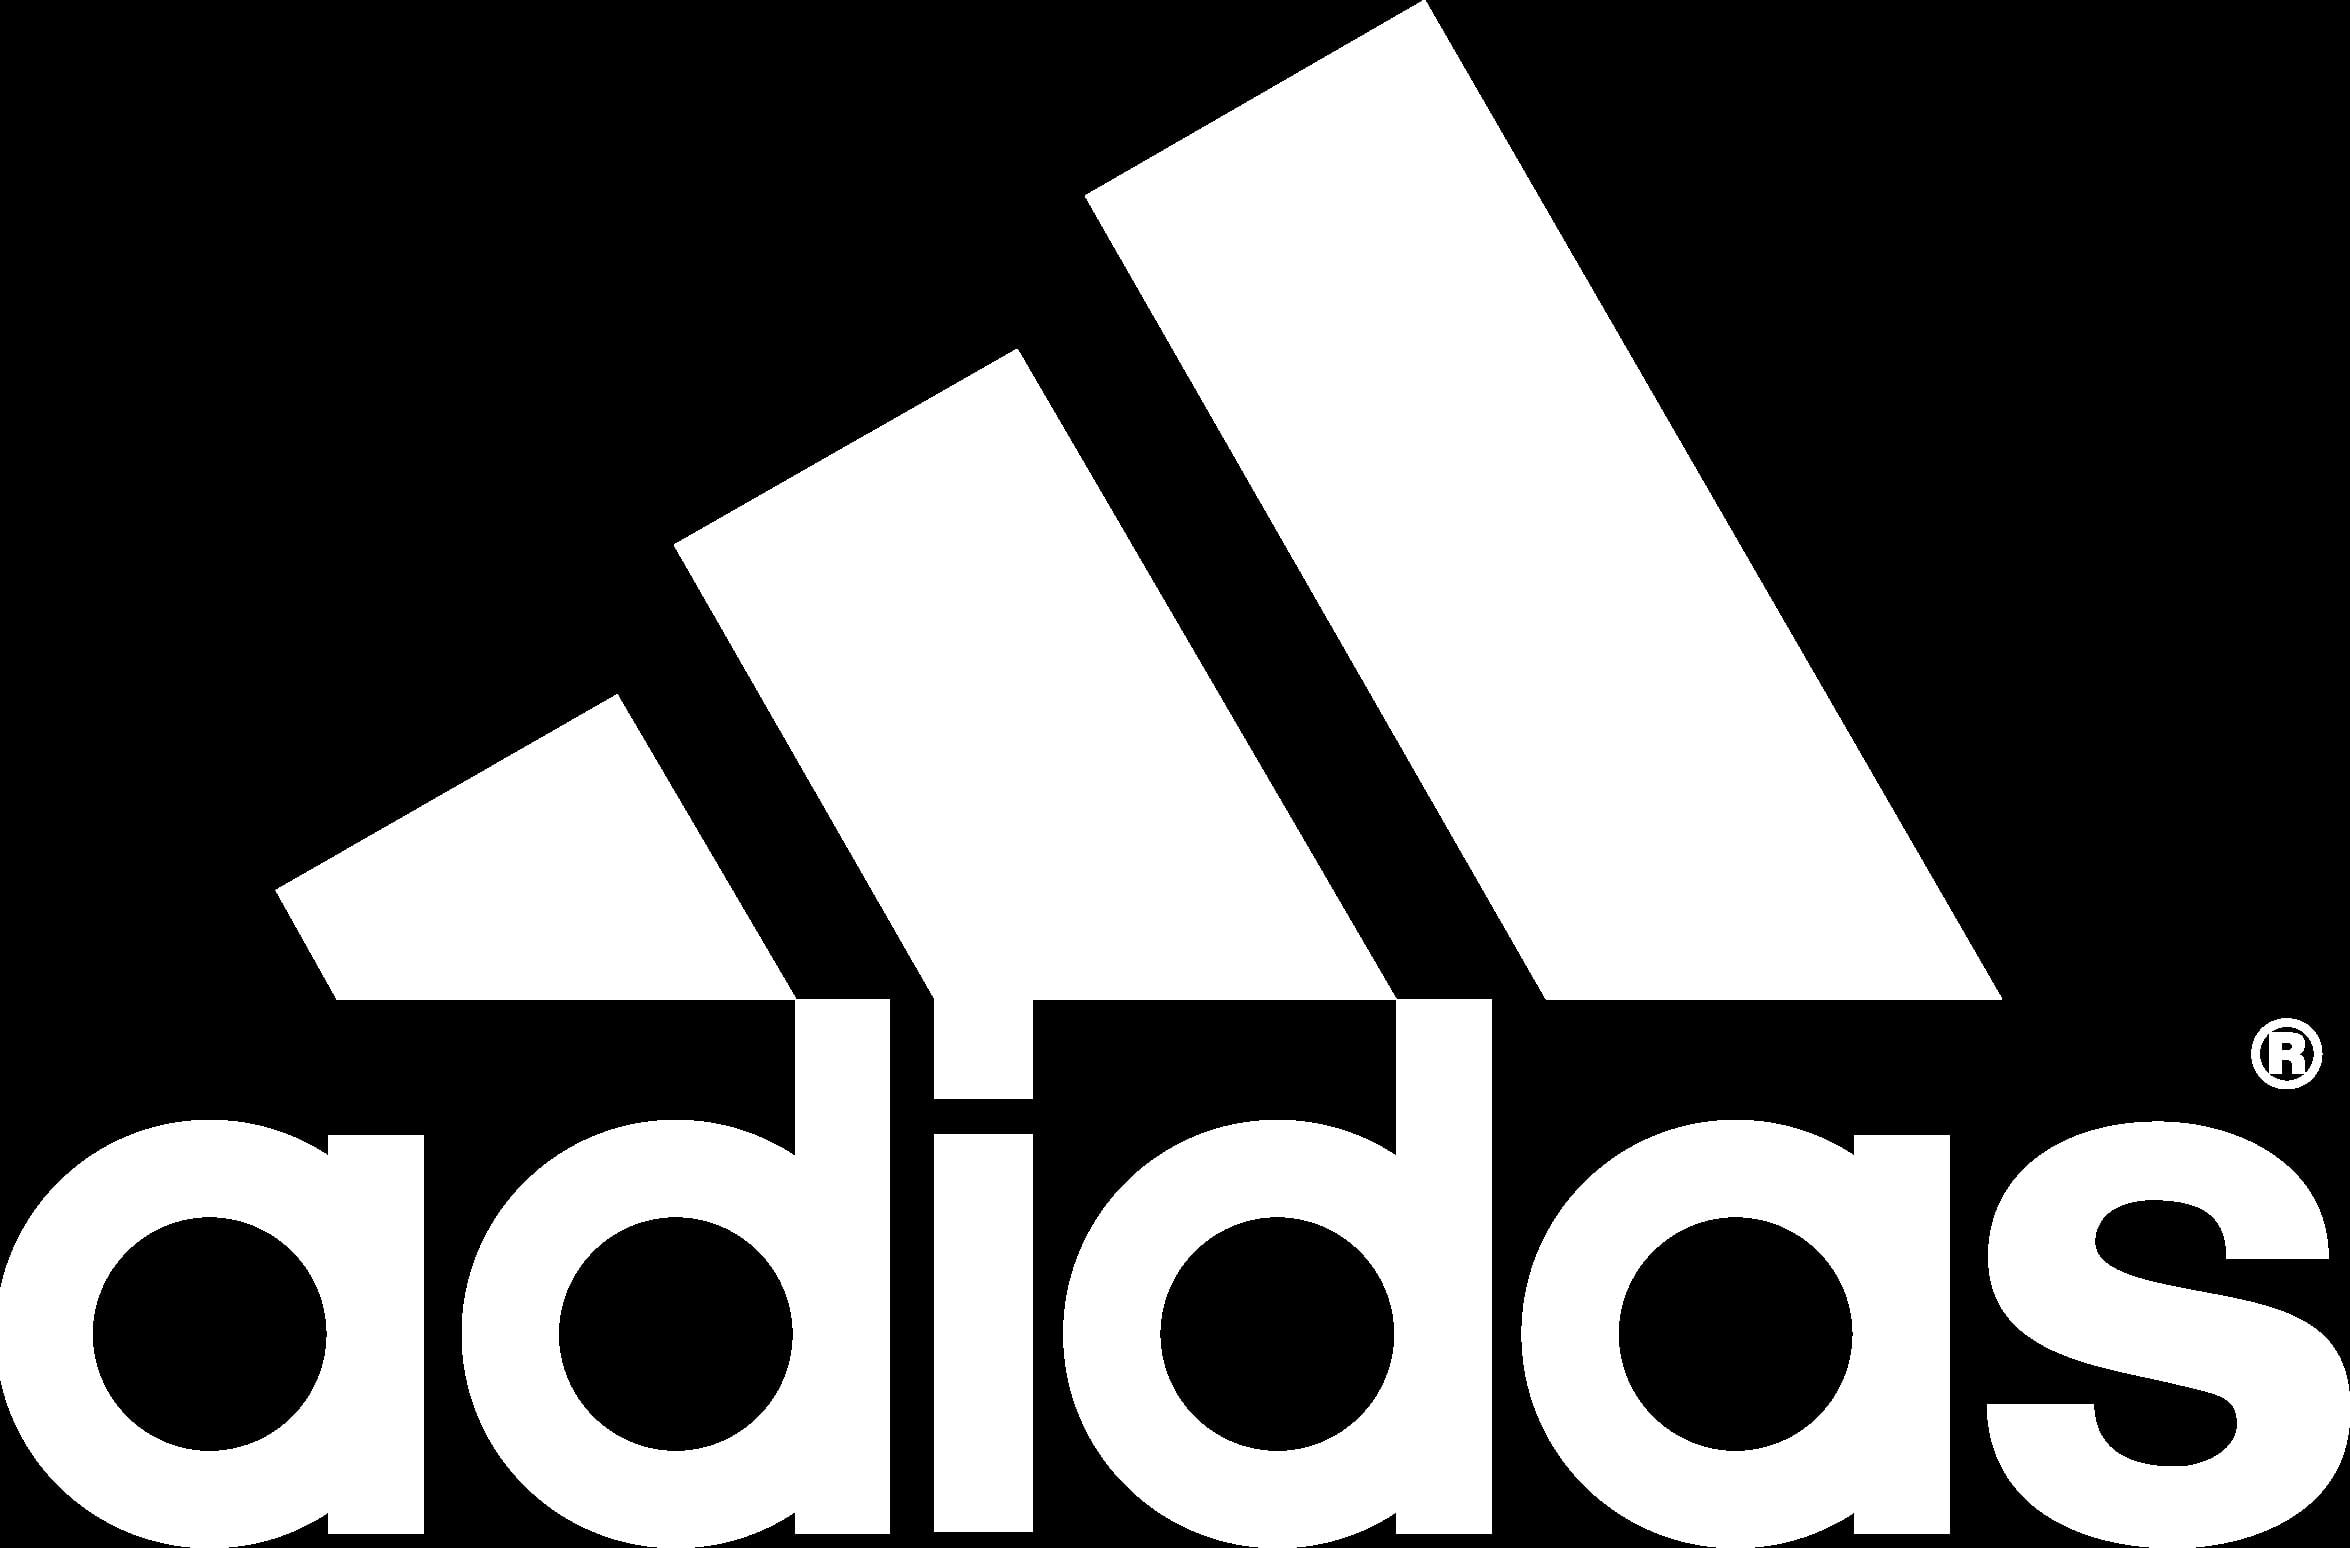 Hình ảnh logo Adidas trên nền đen khiến cho người xem không thể rời mắt với sự đồng nhất và tuyệt vời trong thiết kế. Đây là một sản phẩm hoàn hảo cho những ai quan tâm đến thời trang và phong cách tự do.